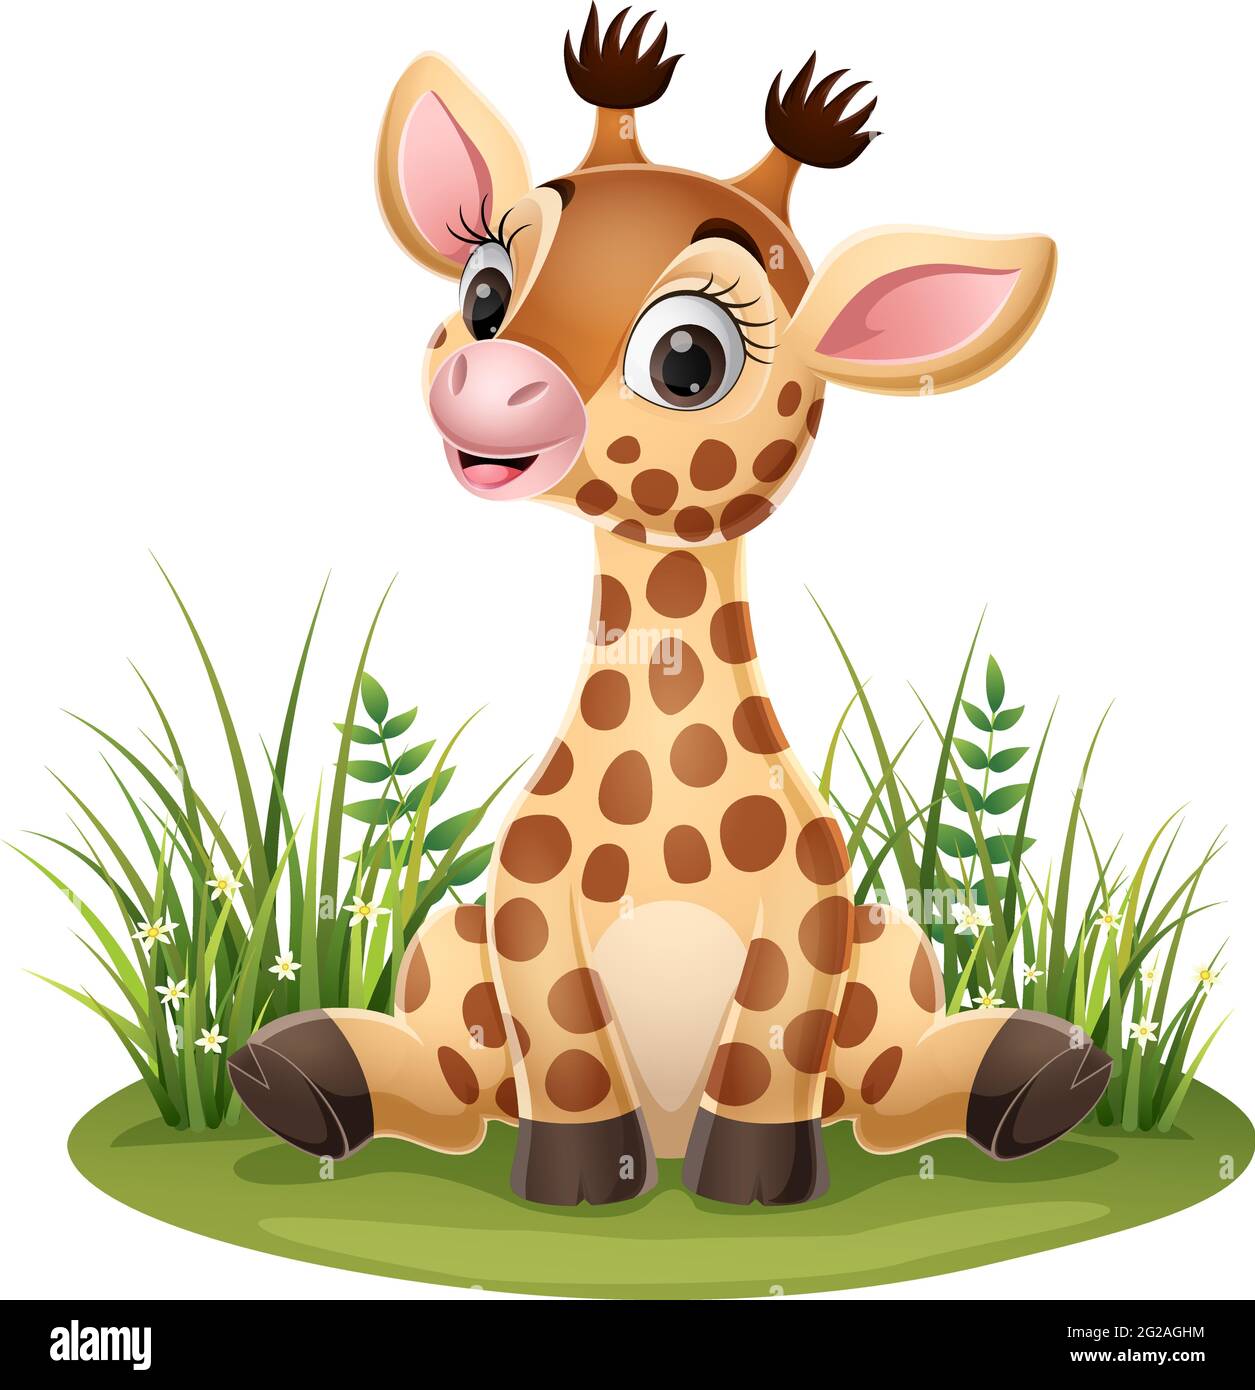 Petite girafe de dessin animé assise dans l'herbe Illustration de Vecteur